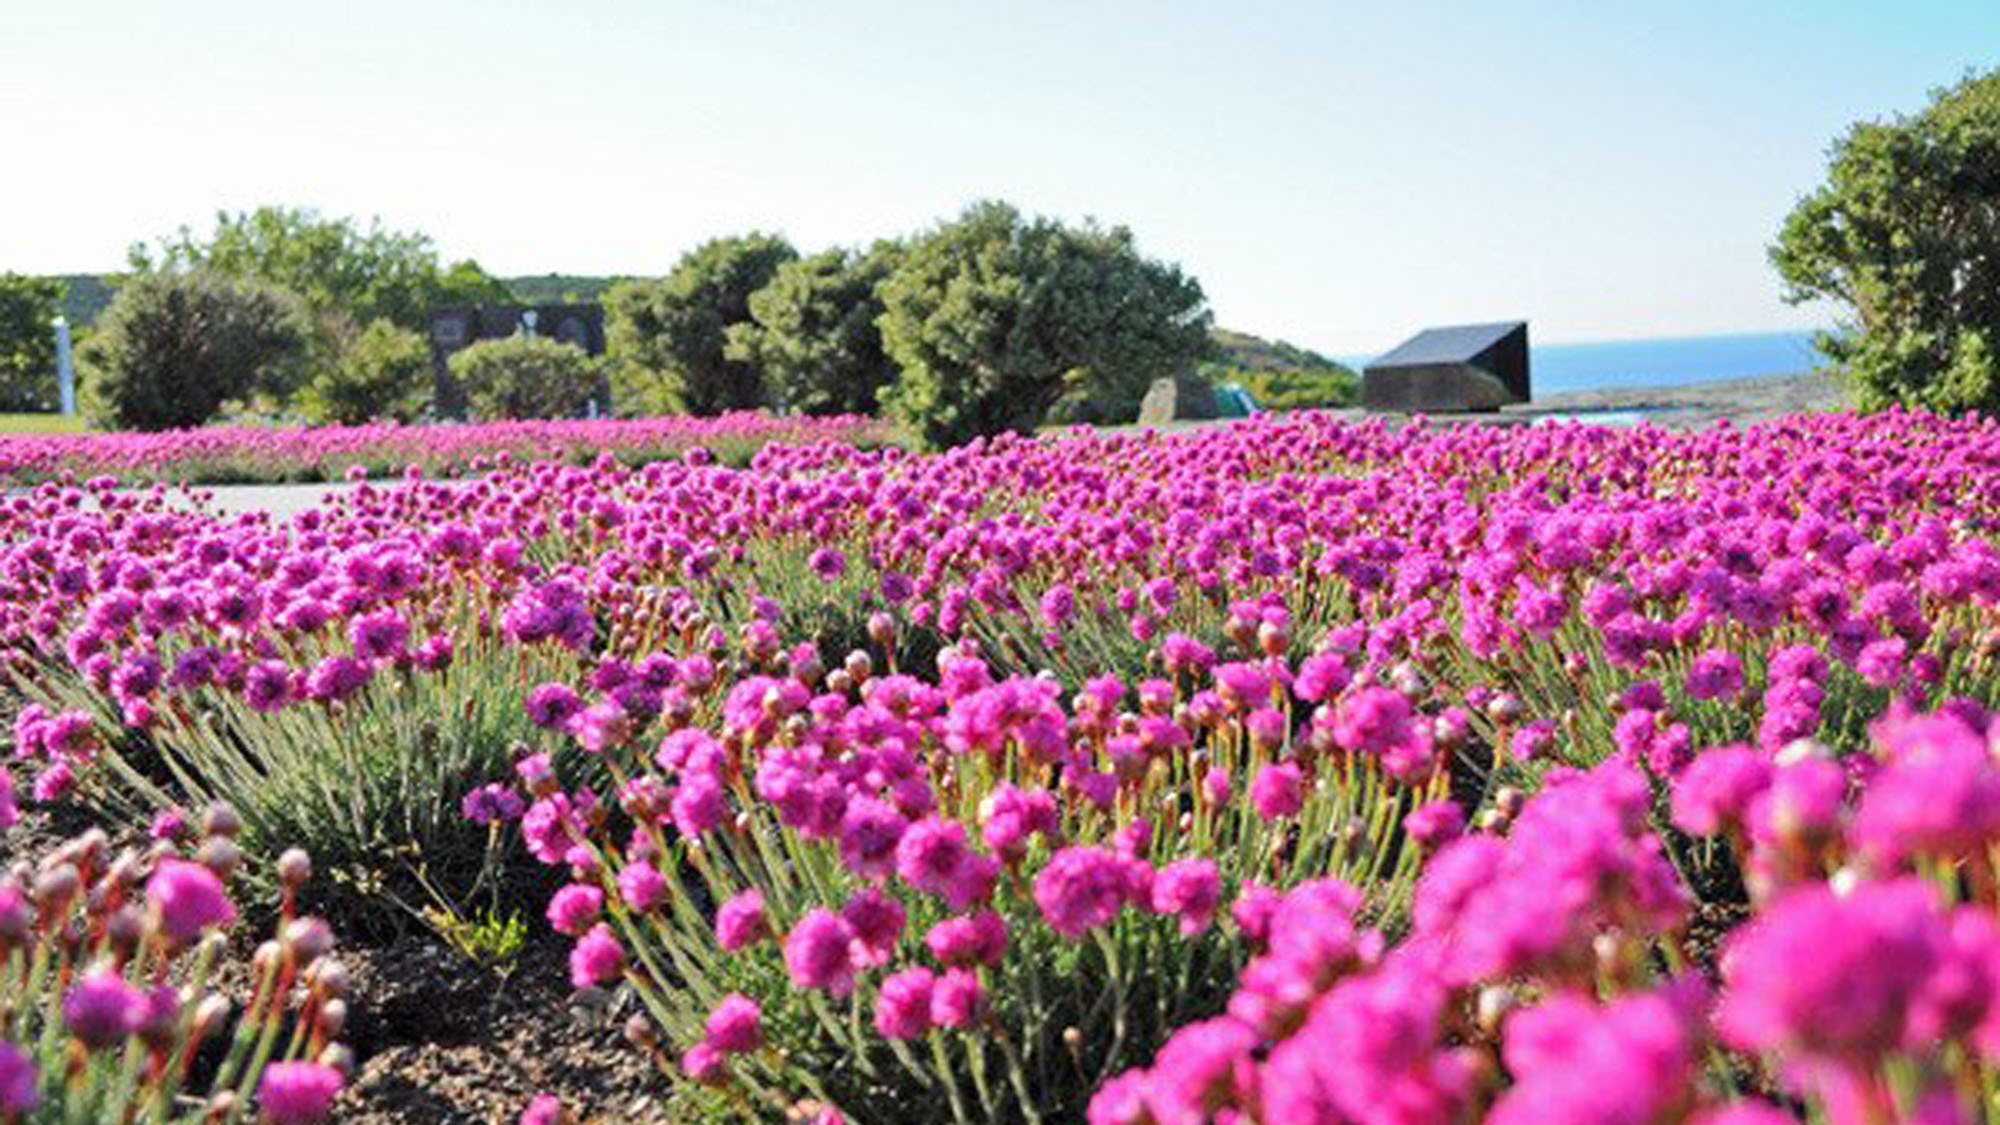 【稚内公園】6月〜7月には公園内にたくさんのアルメリアが開花します。